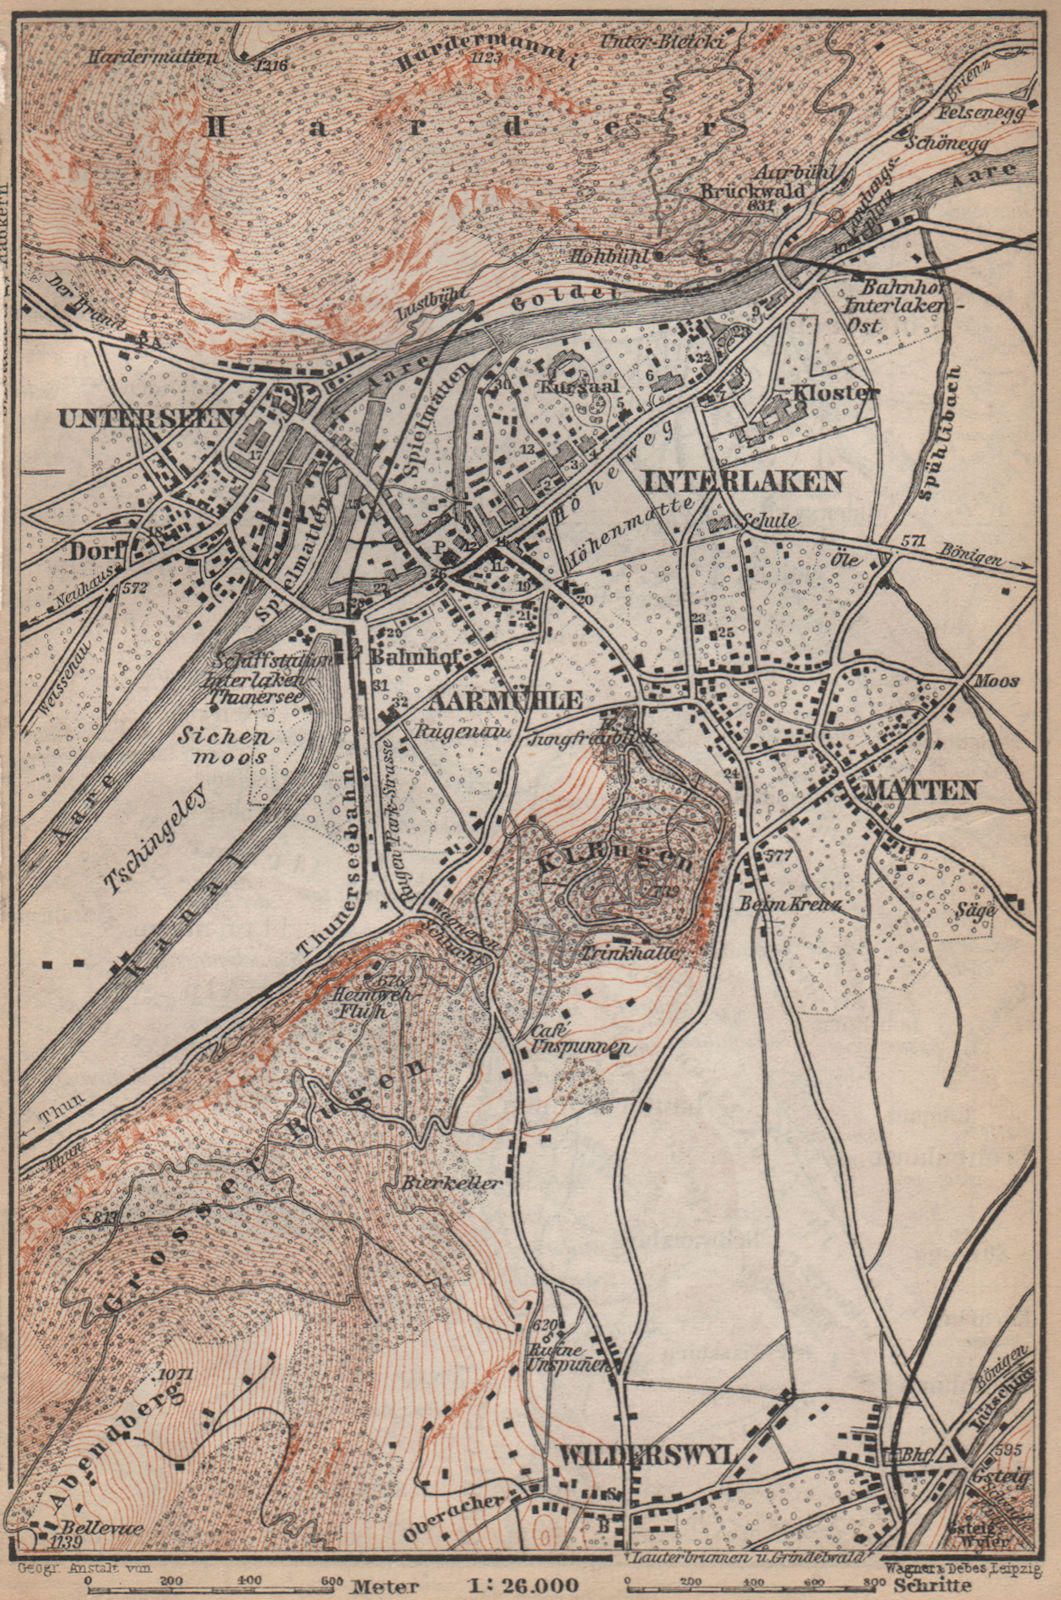 INTERLAKEN ENVIRONS. Unterseen Matten Aarmuhle Wilderswyl. Schweiz 1899 map